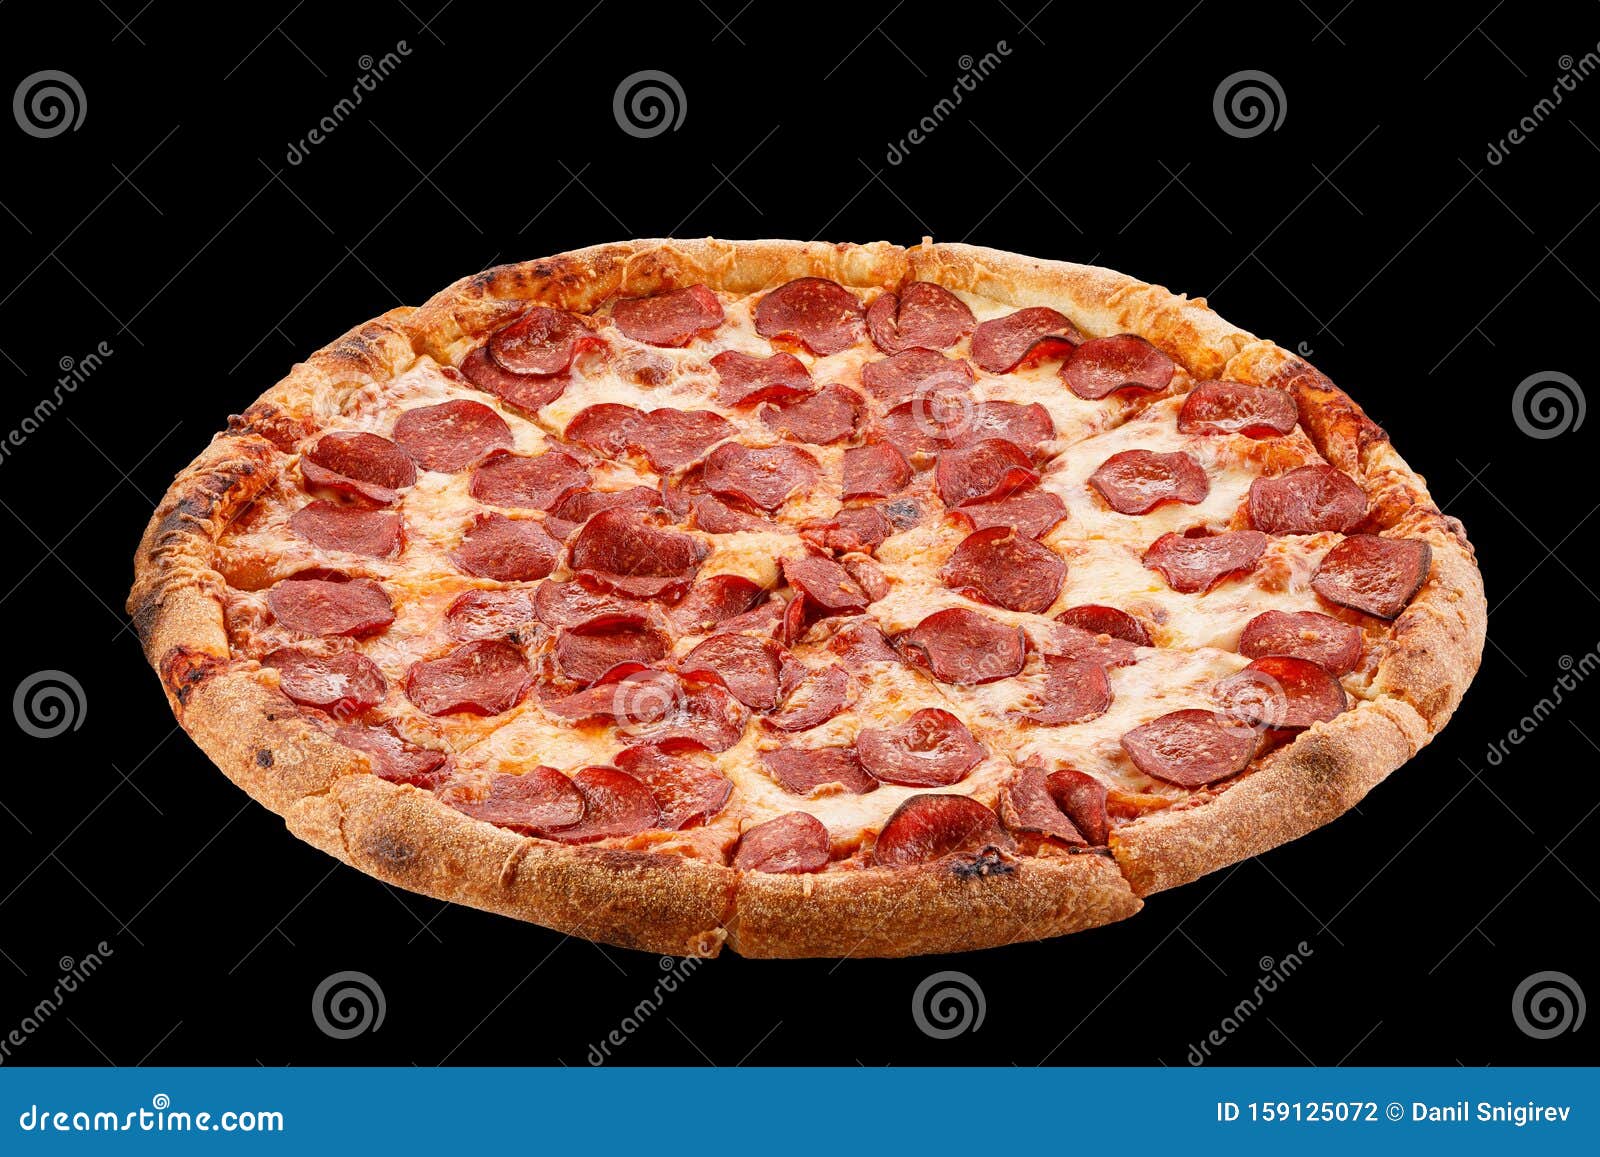 фон с пиццей пепперони фото 102